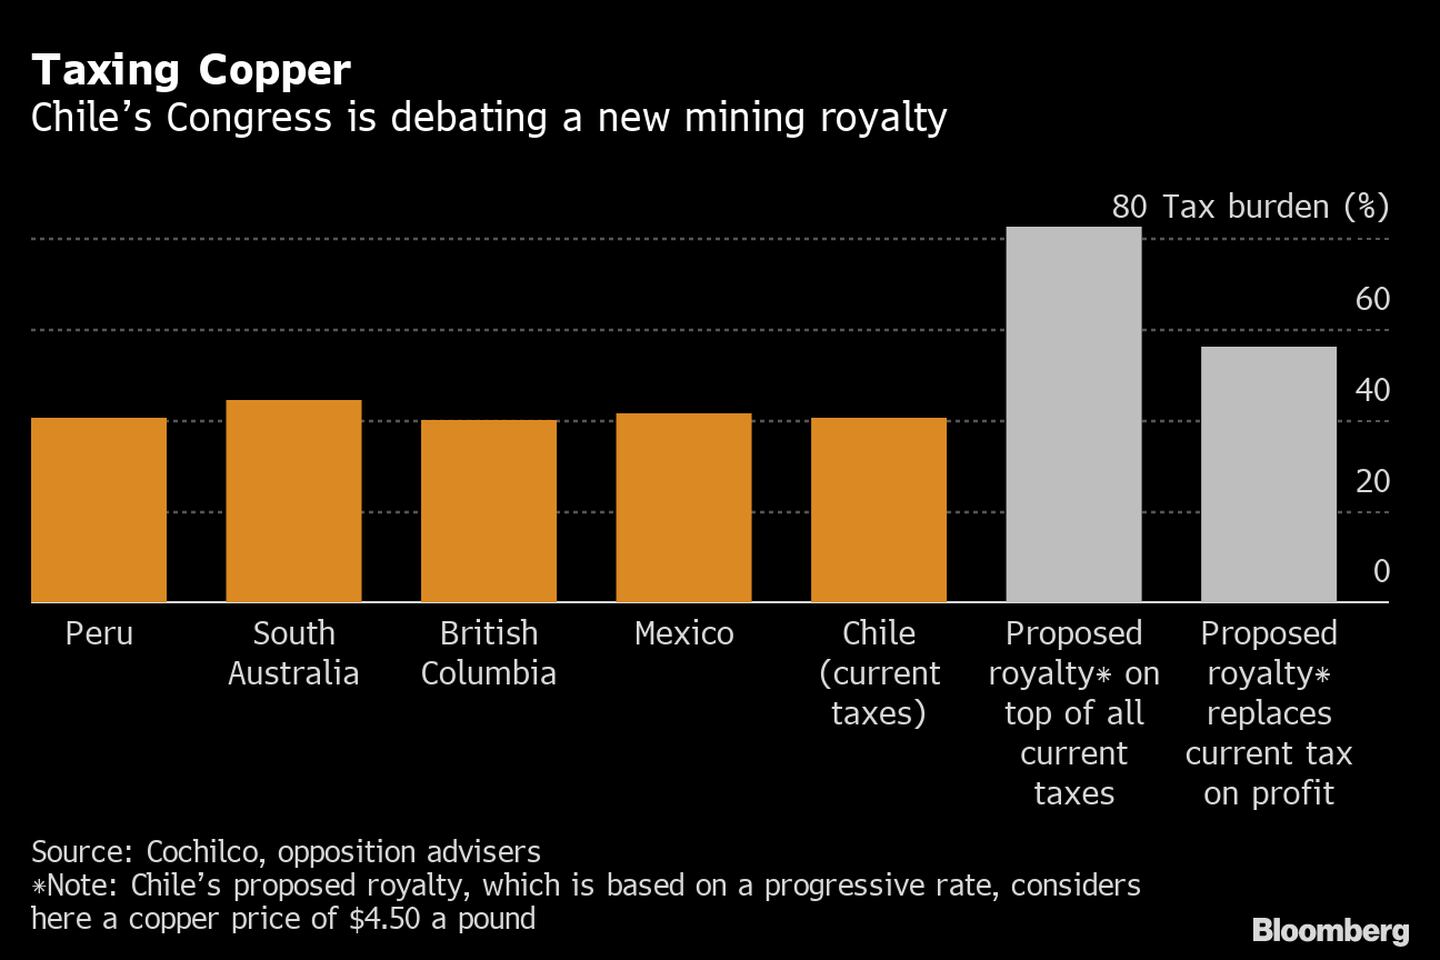 Congreso chileno debate el nuevo royalty minero. dfd